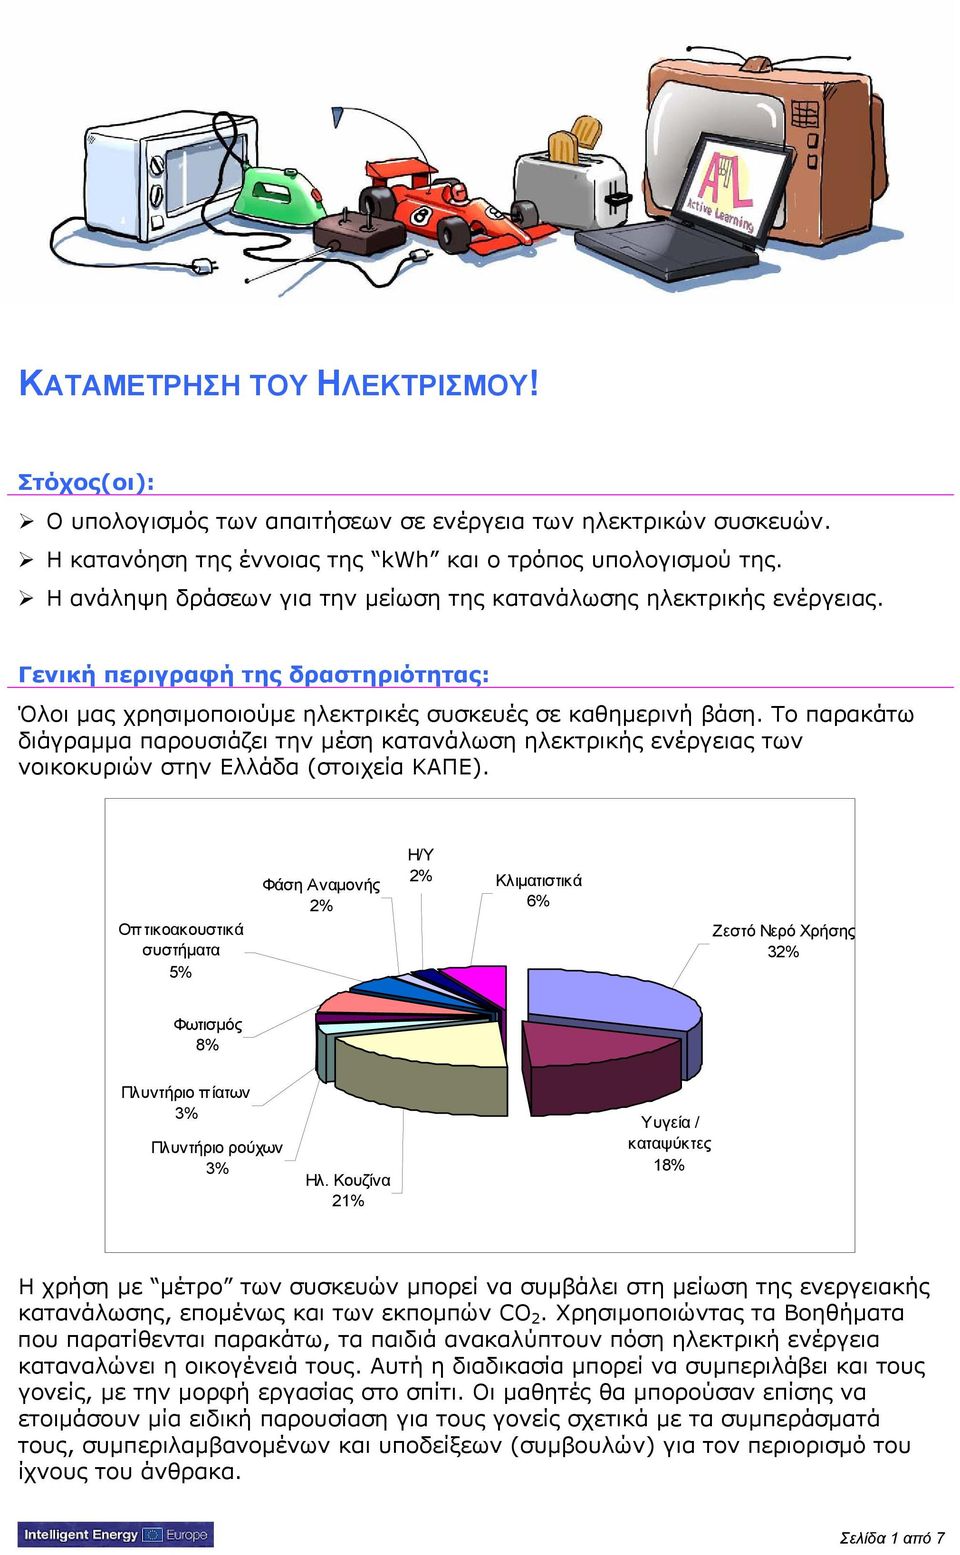 Το παρακάτω διάγραμμα παρουσιάζει την μέση κατανάλωση ηλεκτρικής ενέργειας των νοικοκυριών στην Ελλάδα (στοιχεία ΚΑΠΕ).